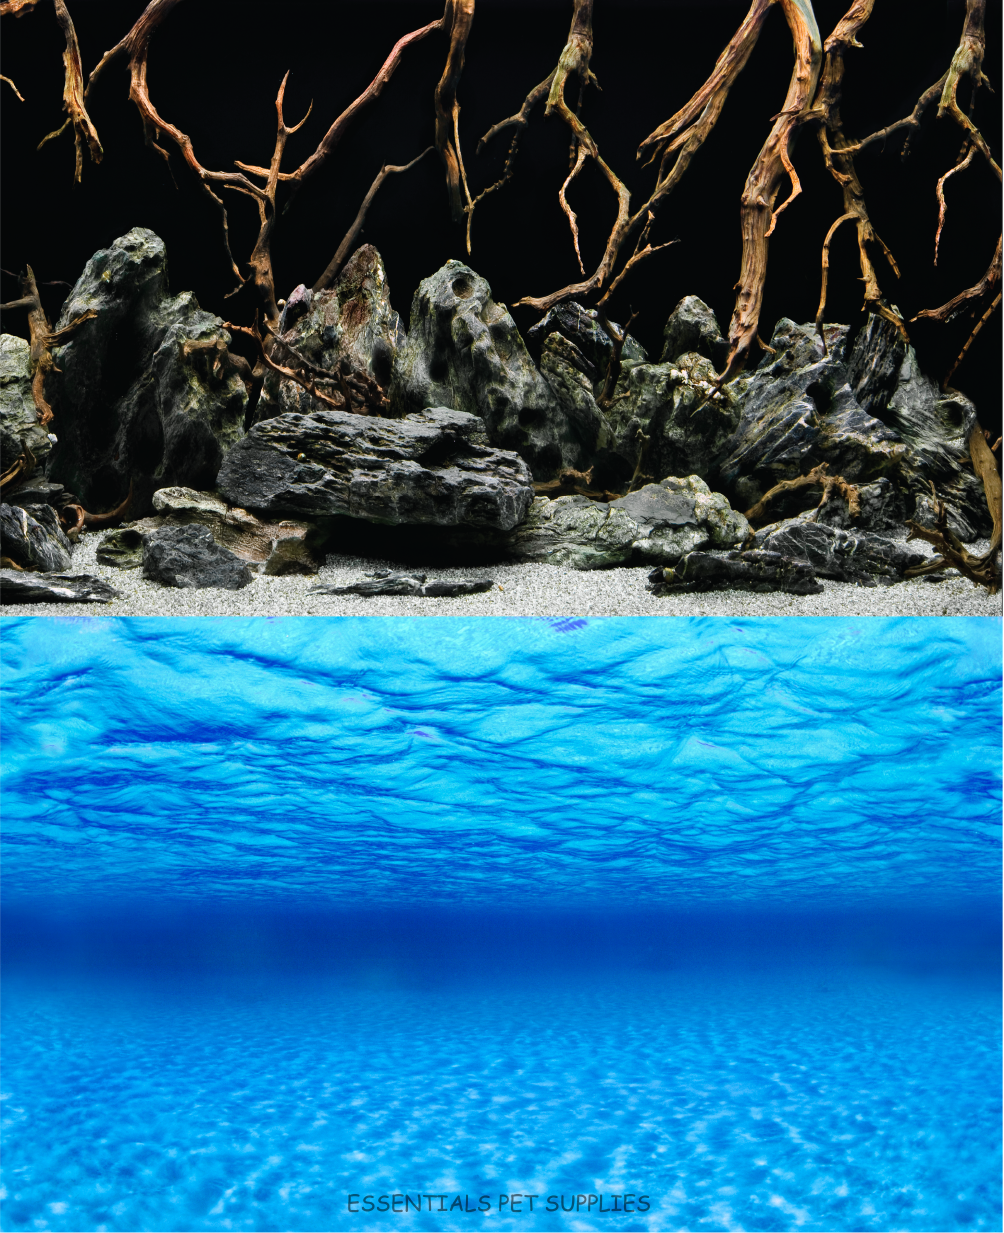 Aquarium Fish Tank Background Double Side Poster 24"(60cm)*6ft(183cm)